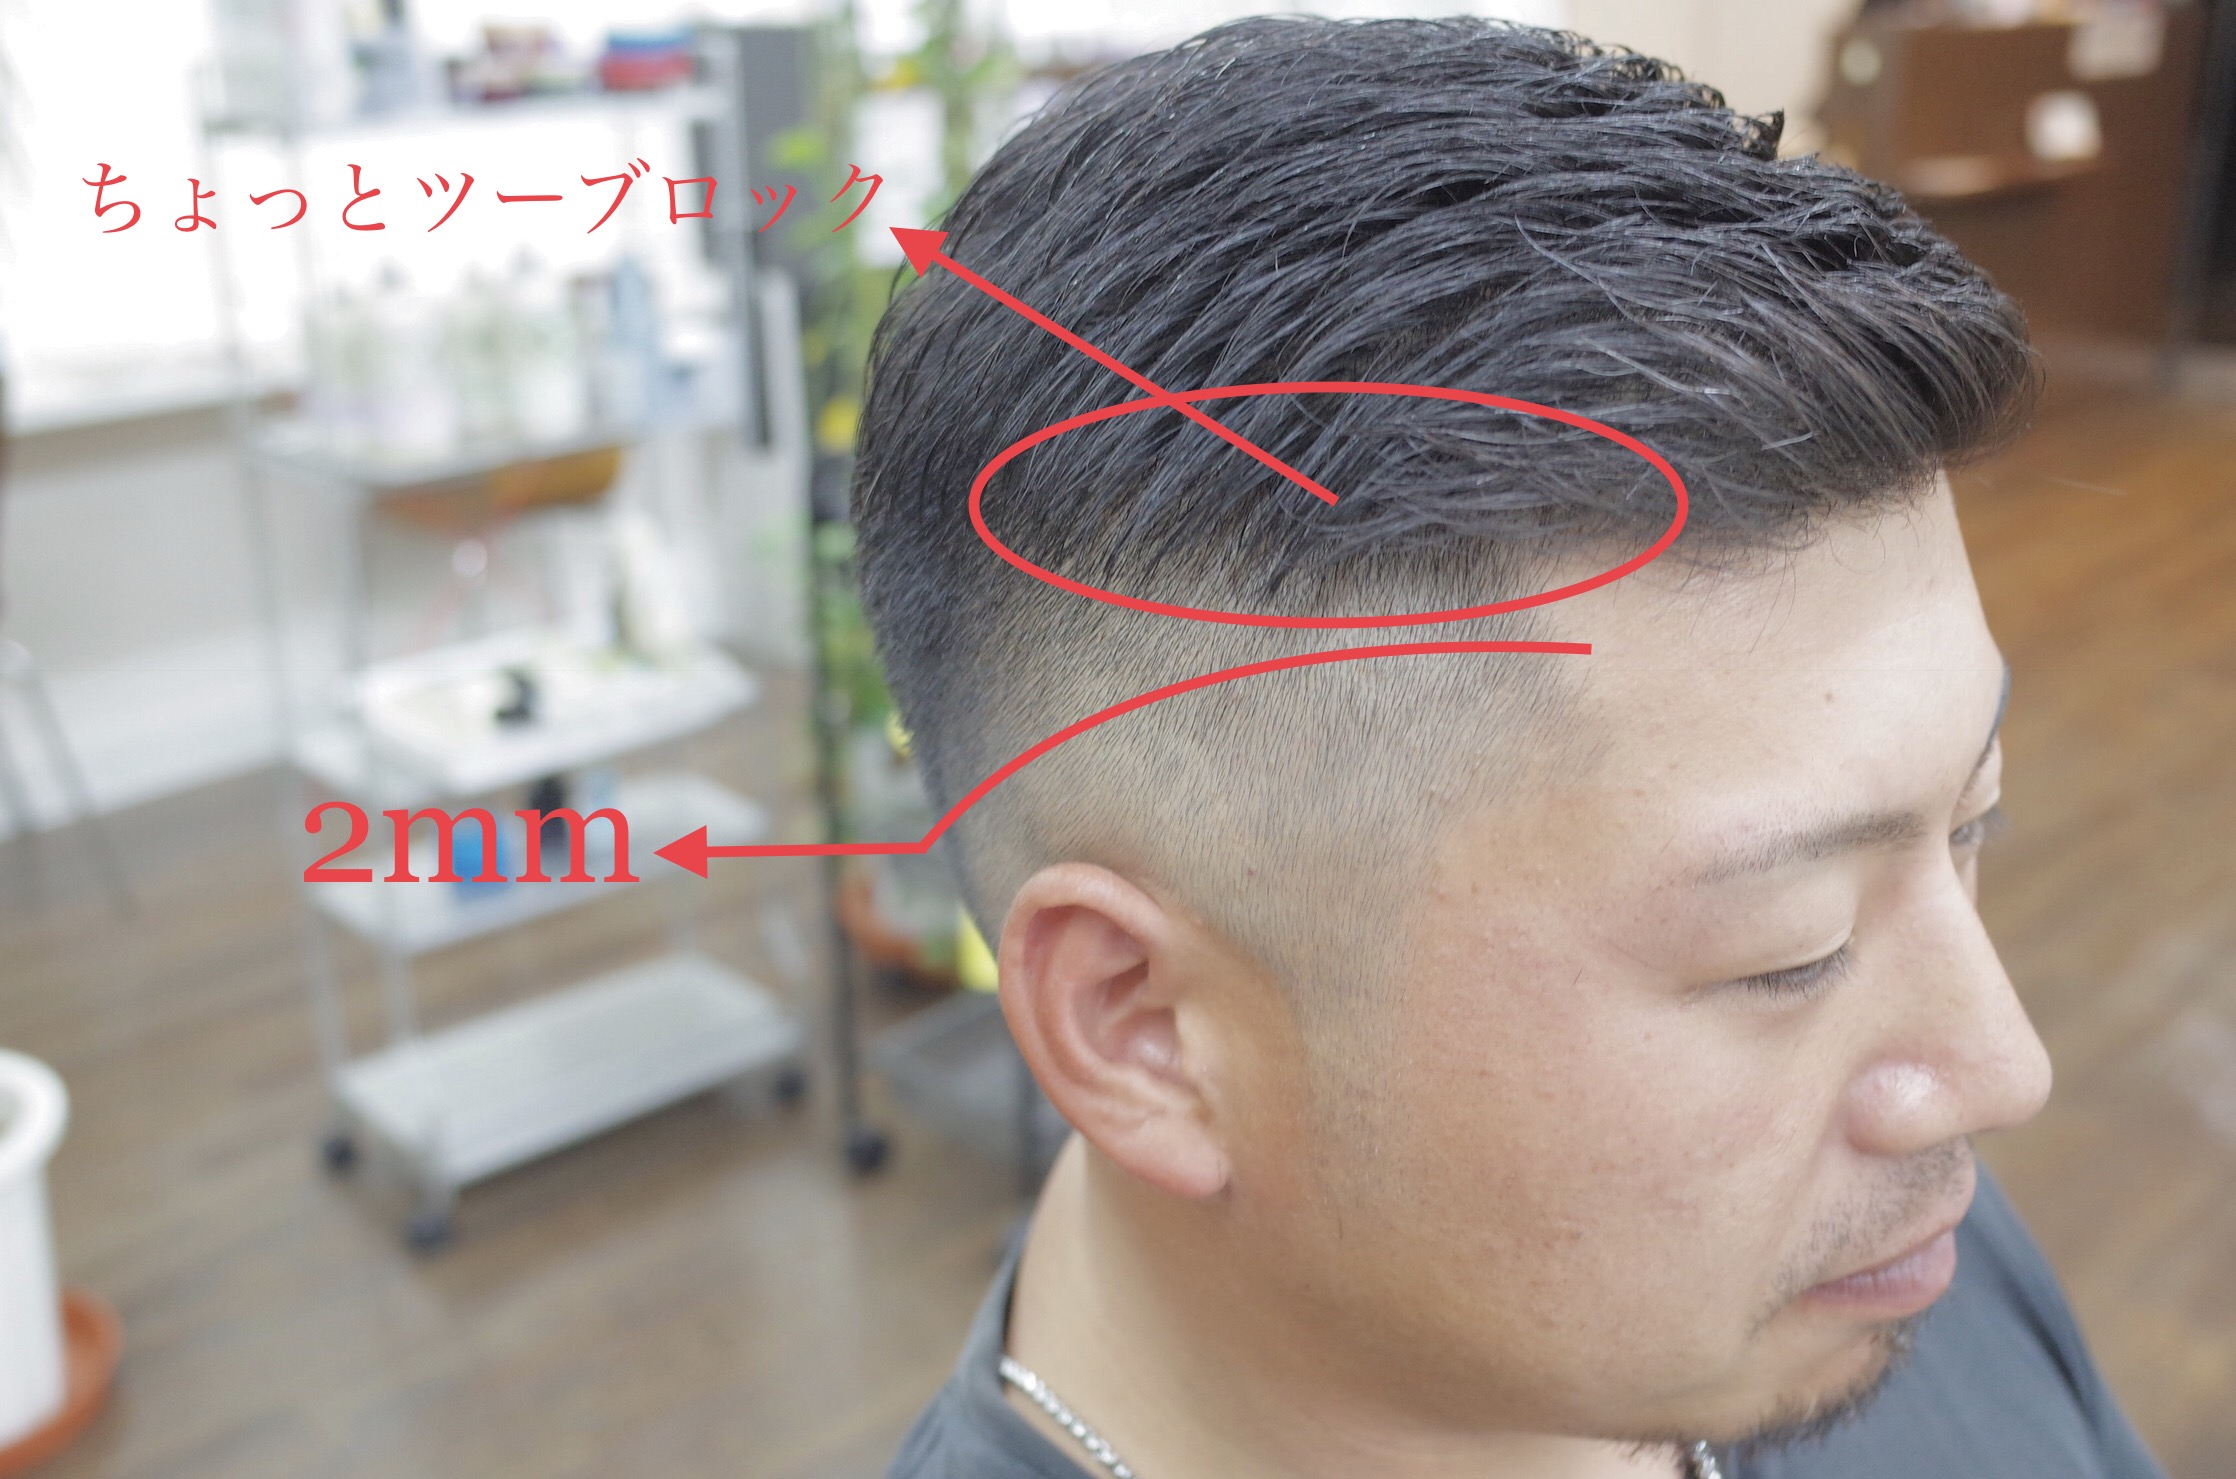 ケンコバ風髪型の作り方 Lifehair Barber Shop ライフヘアー